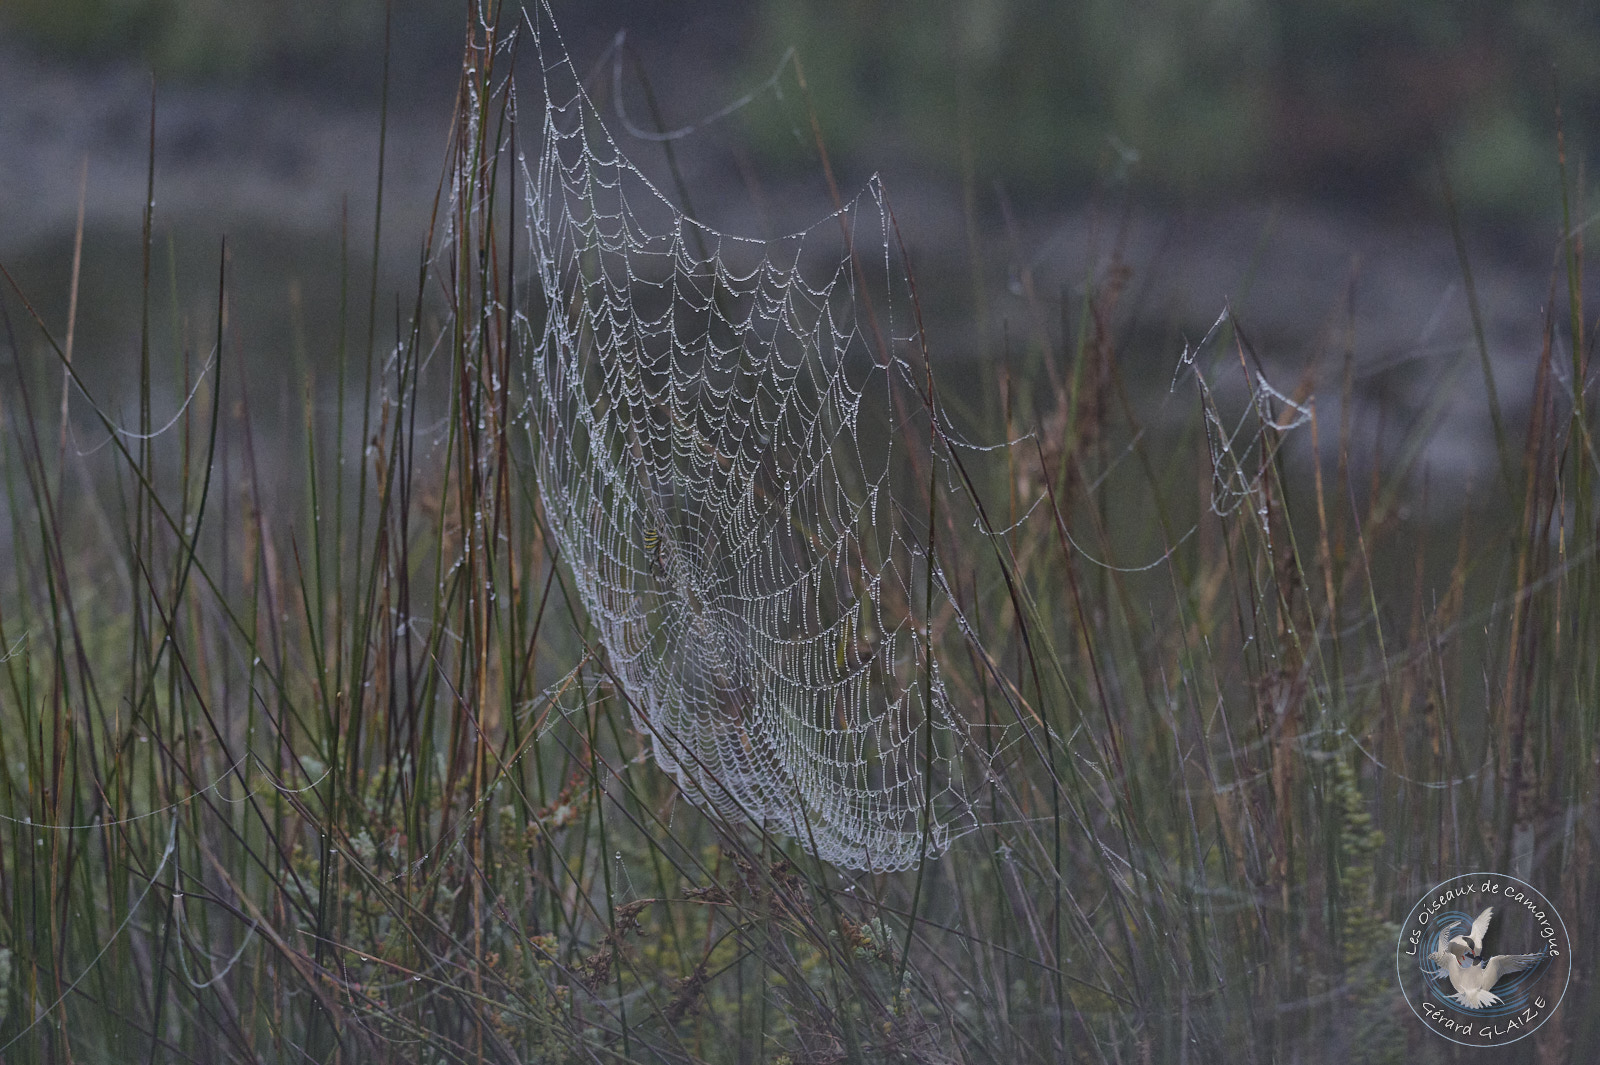 Toile d'araignée - Spider web